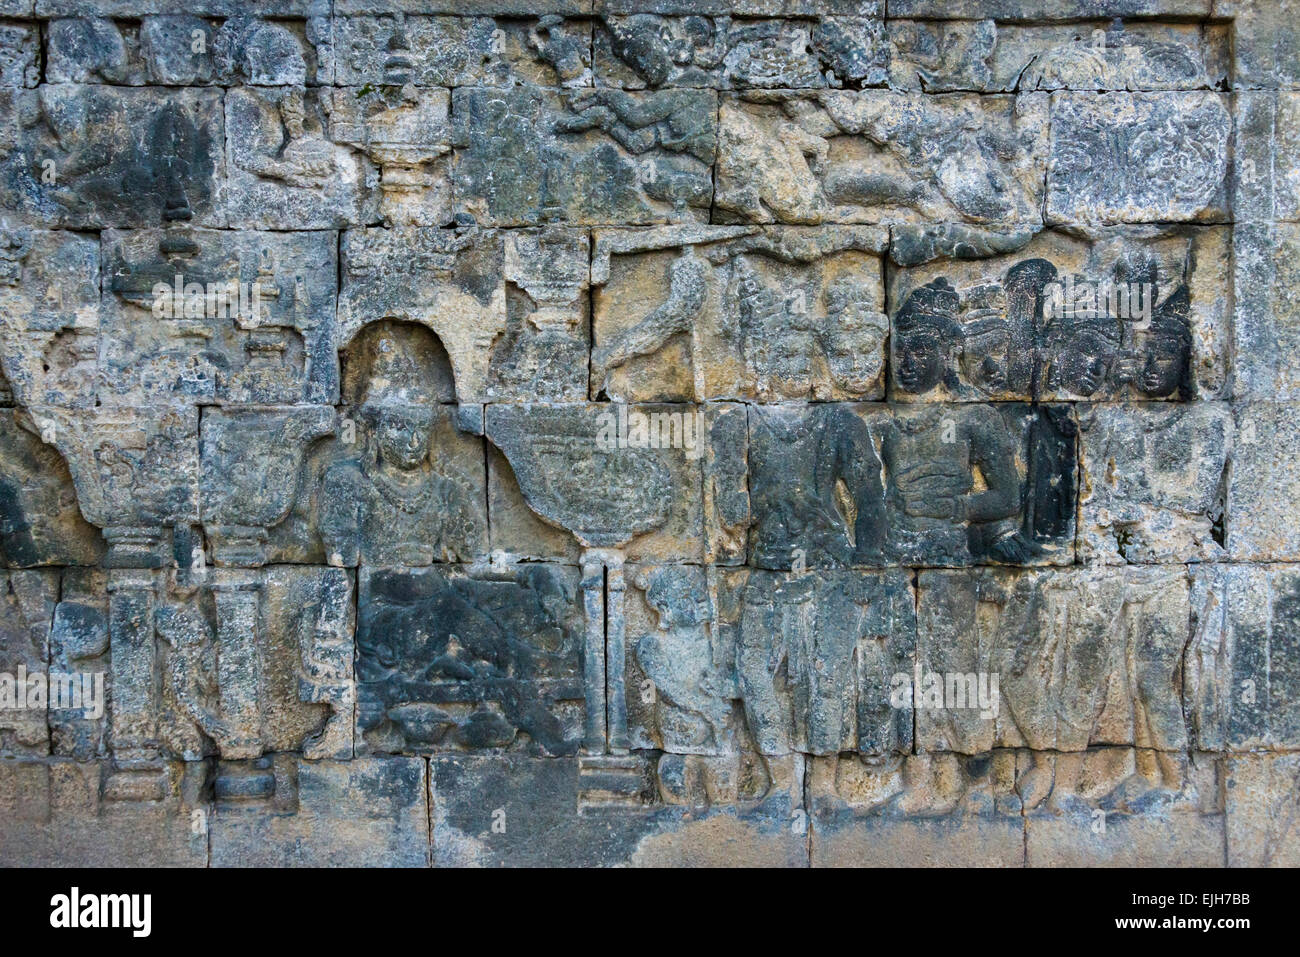 Libre de la sculpture sur pierre, Borobudur, UNESCO World Heritage site, Magelang,Central Java, Indonésie Banque D'Images